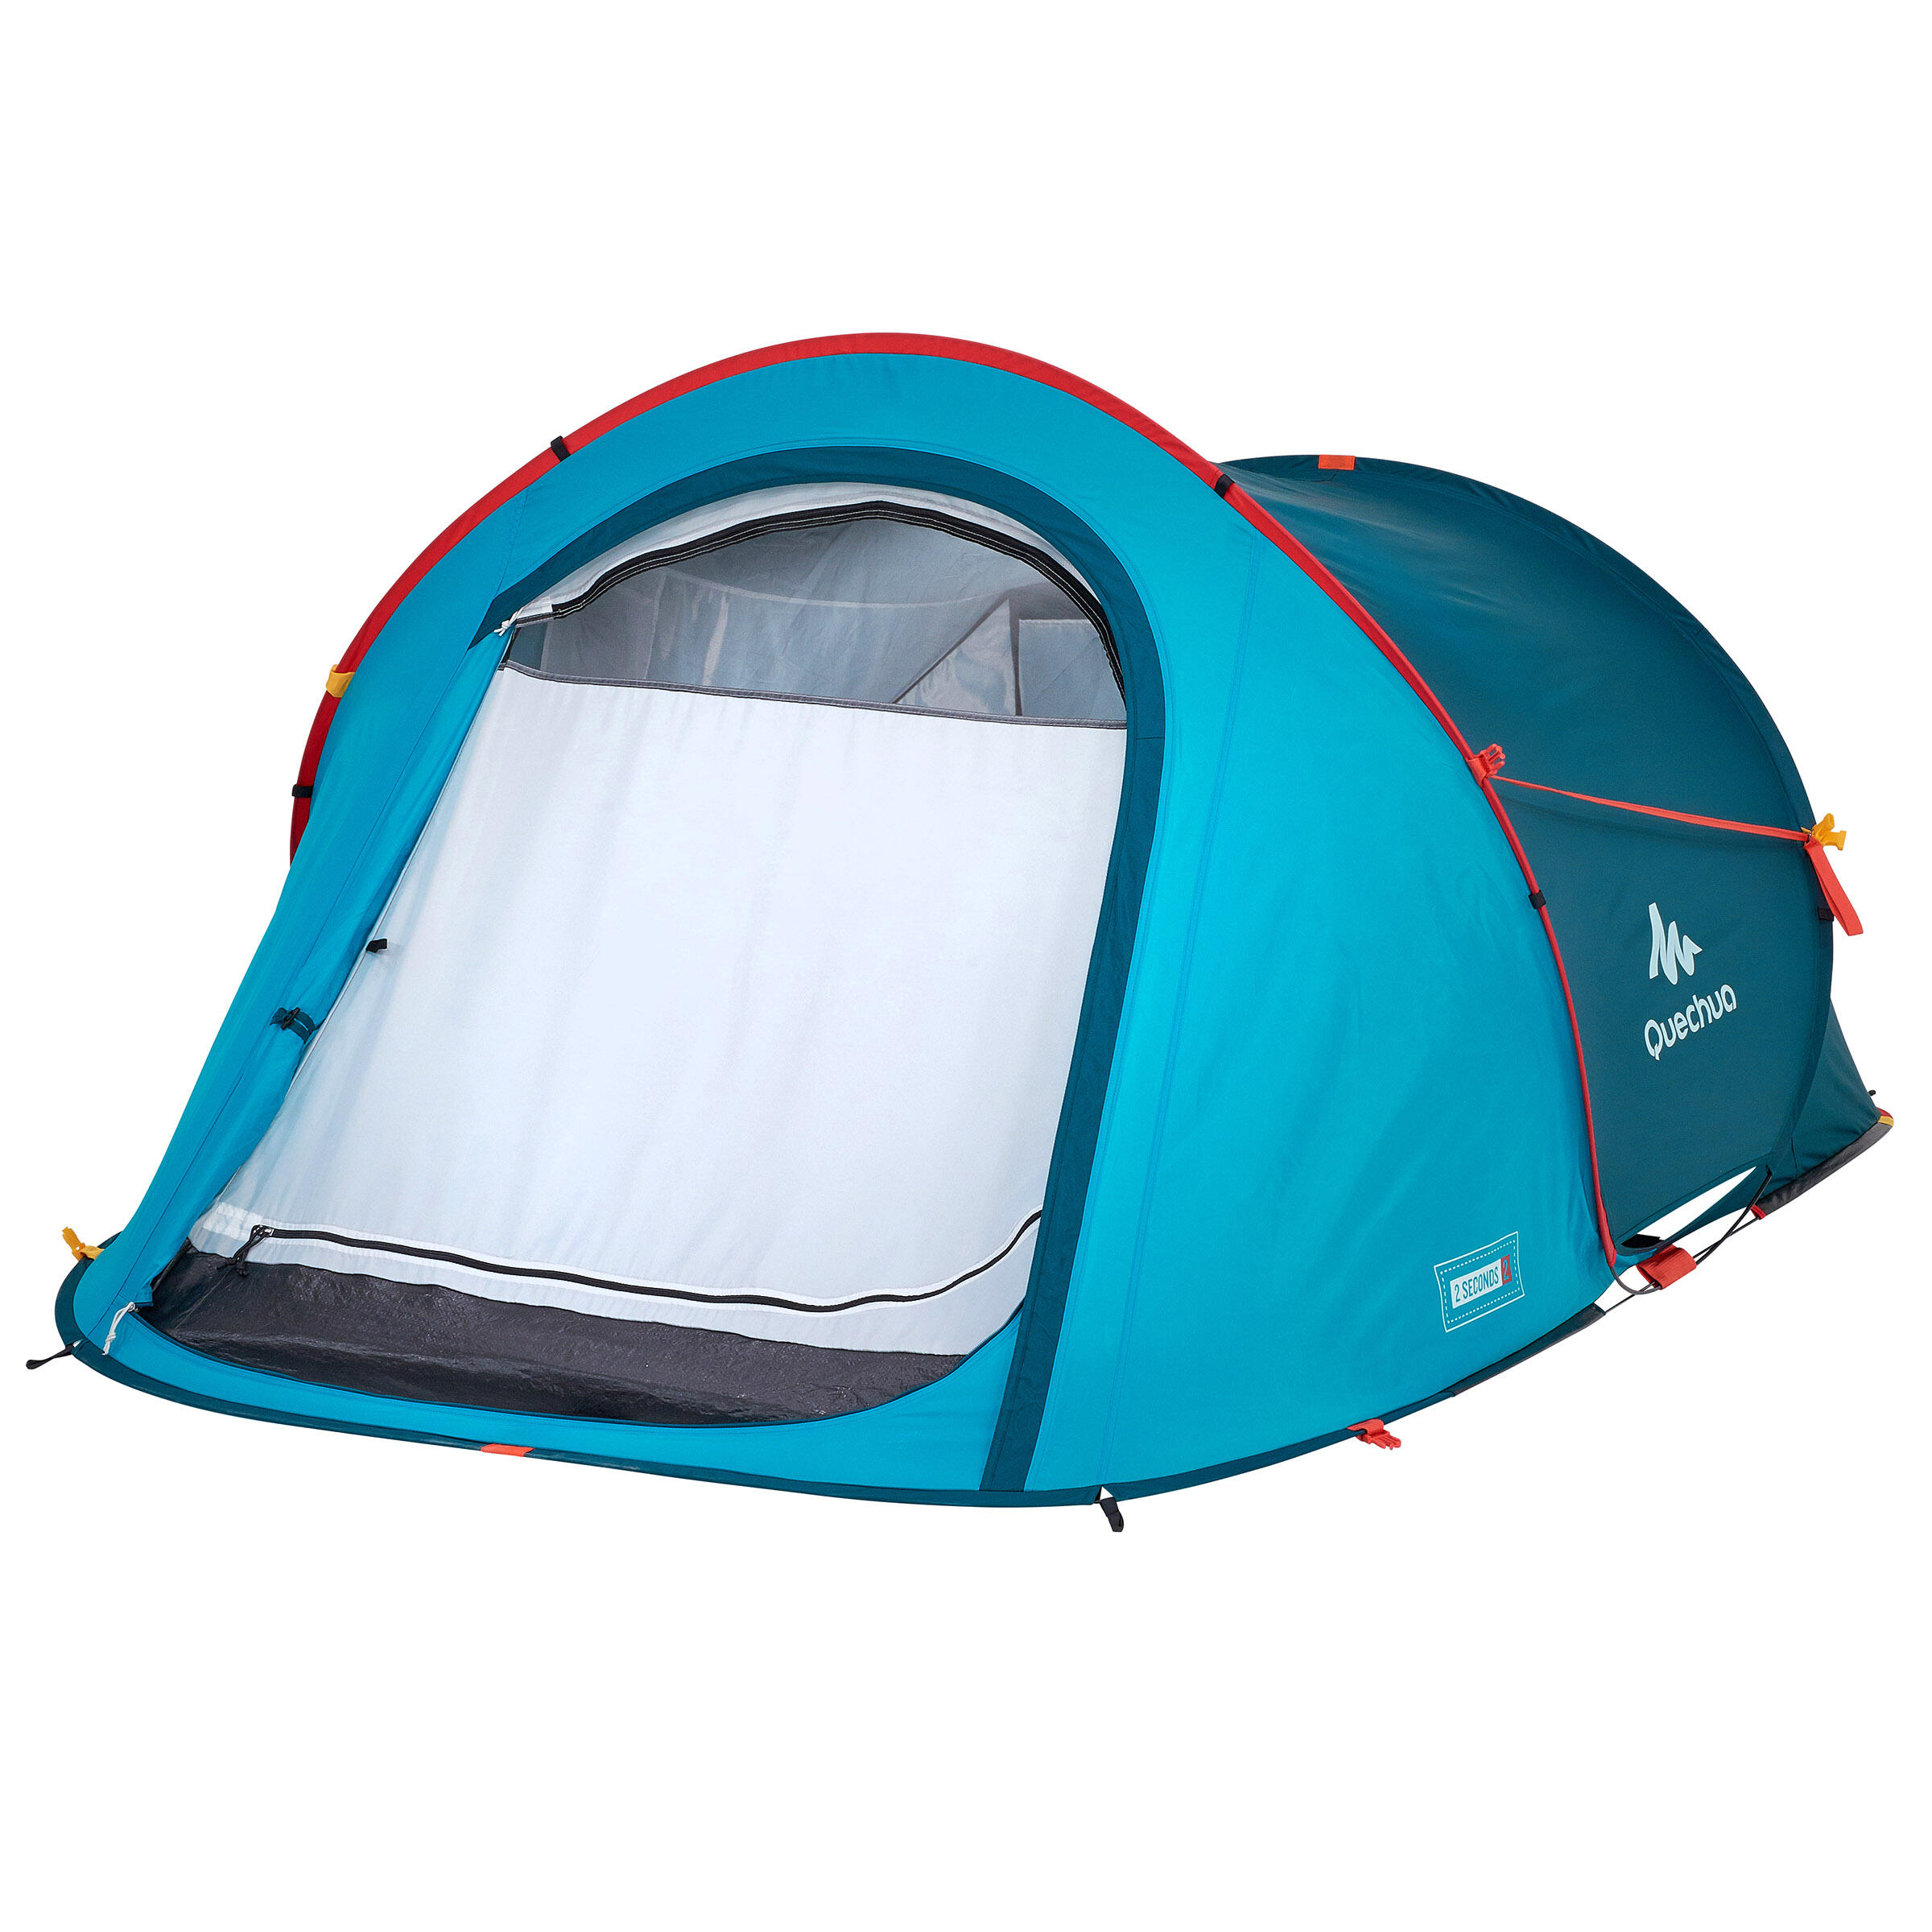 2-Person Camping Tent - 2 Seconds Grey - QUECHUA